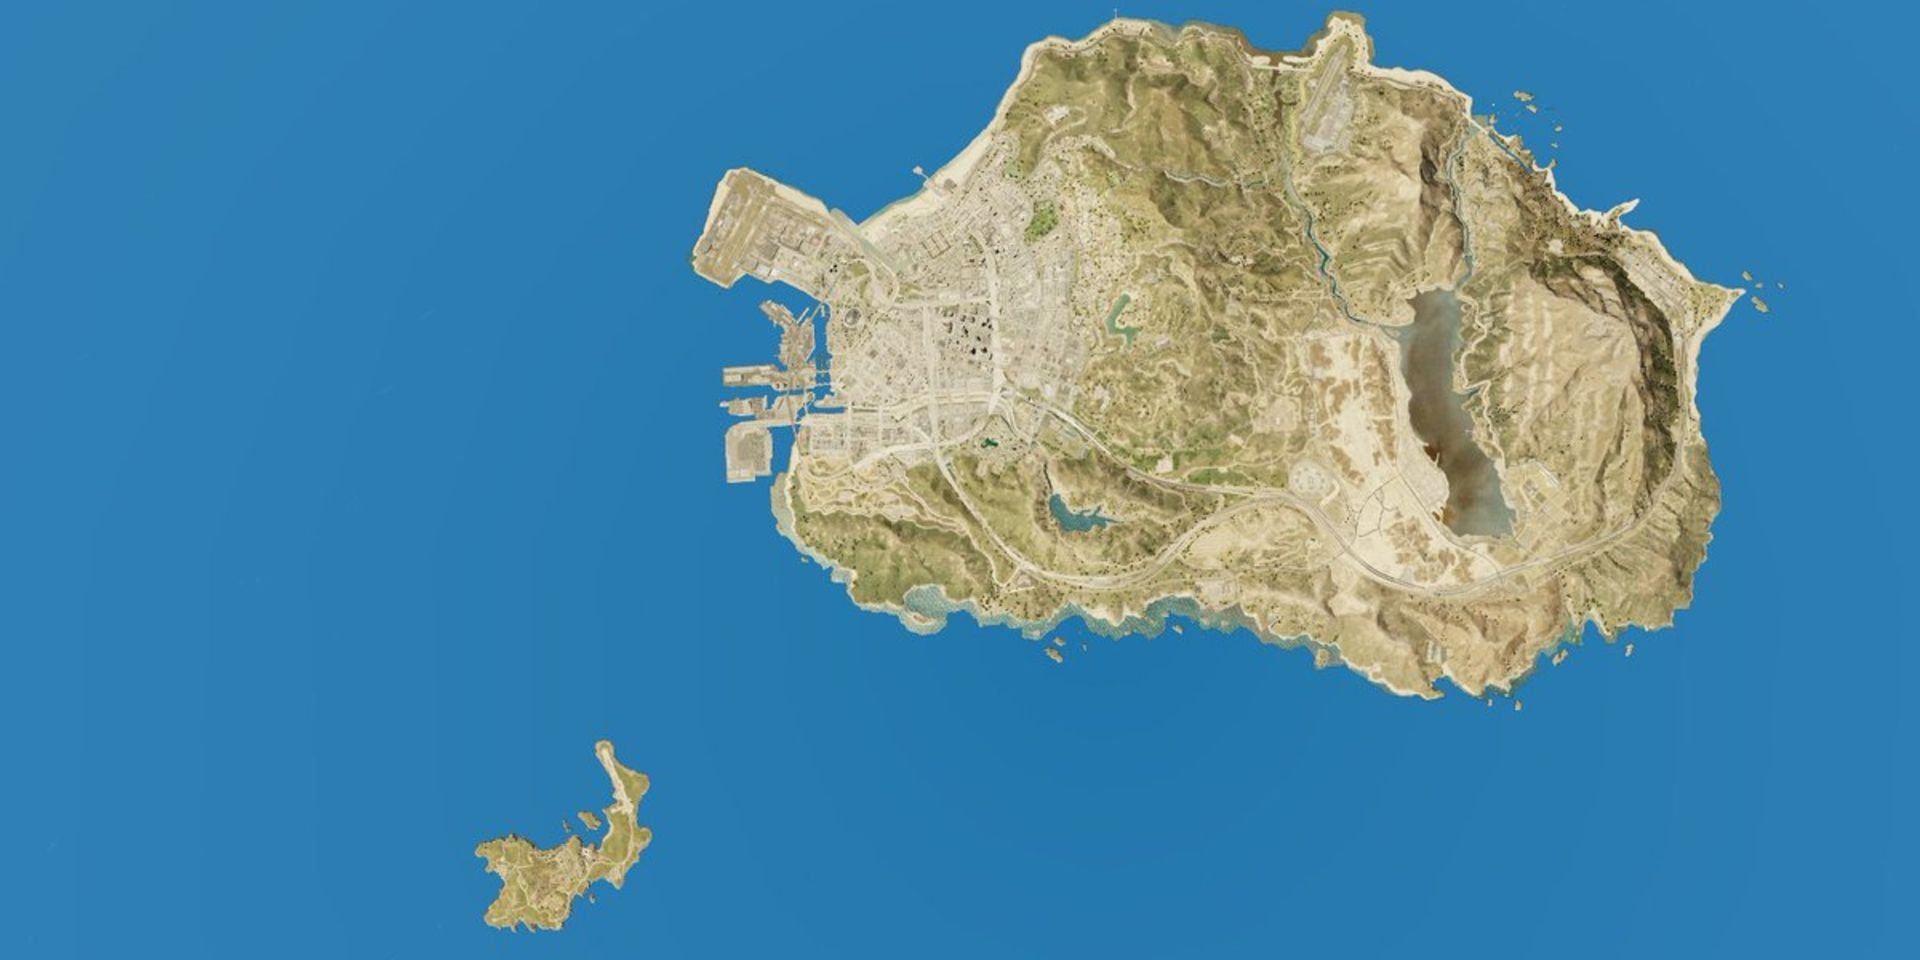 Размер острова Кайо Перико в GTA по сравнению с всей картой Лос-Сантоса